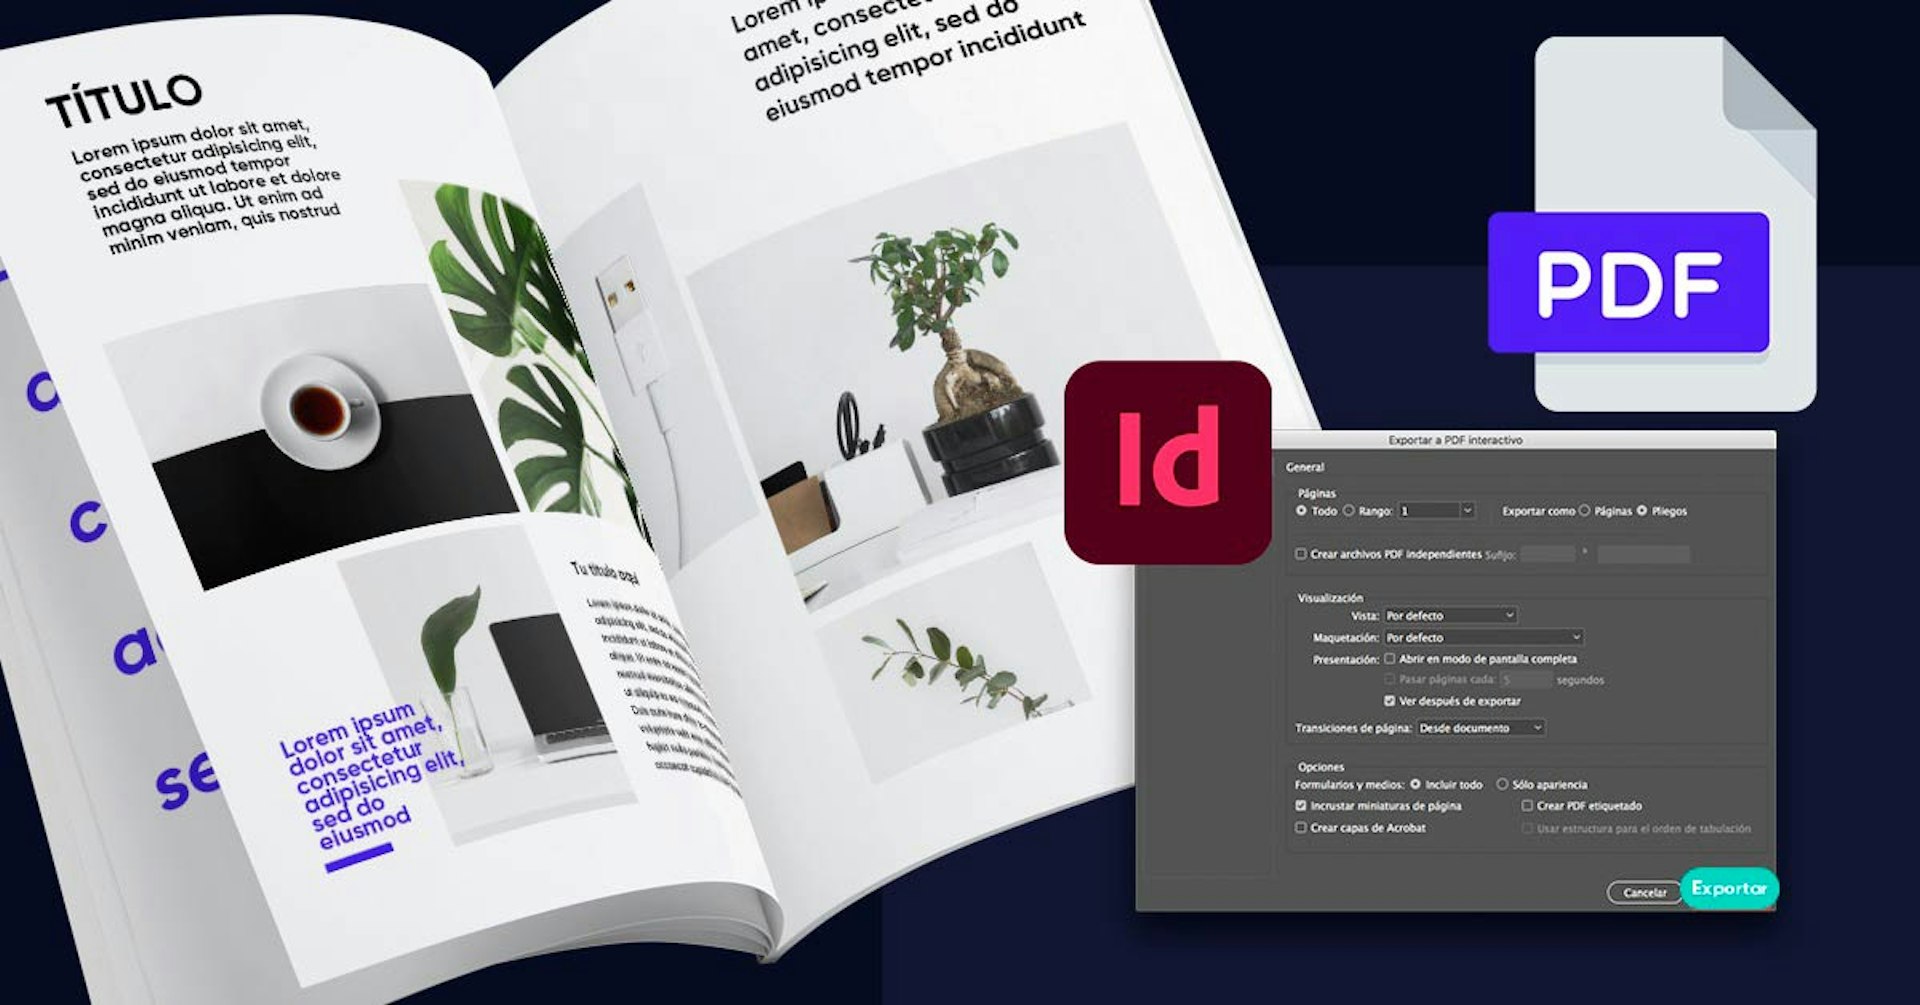 ¿Cómo hacer un PDF interactivo en InDesign? ¡Dale vida a tus documentos!